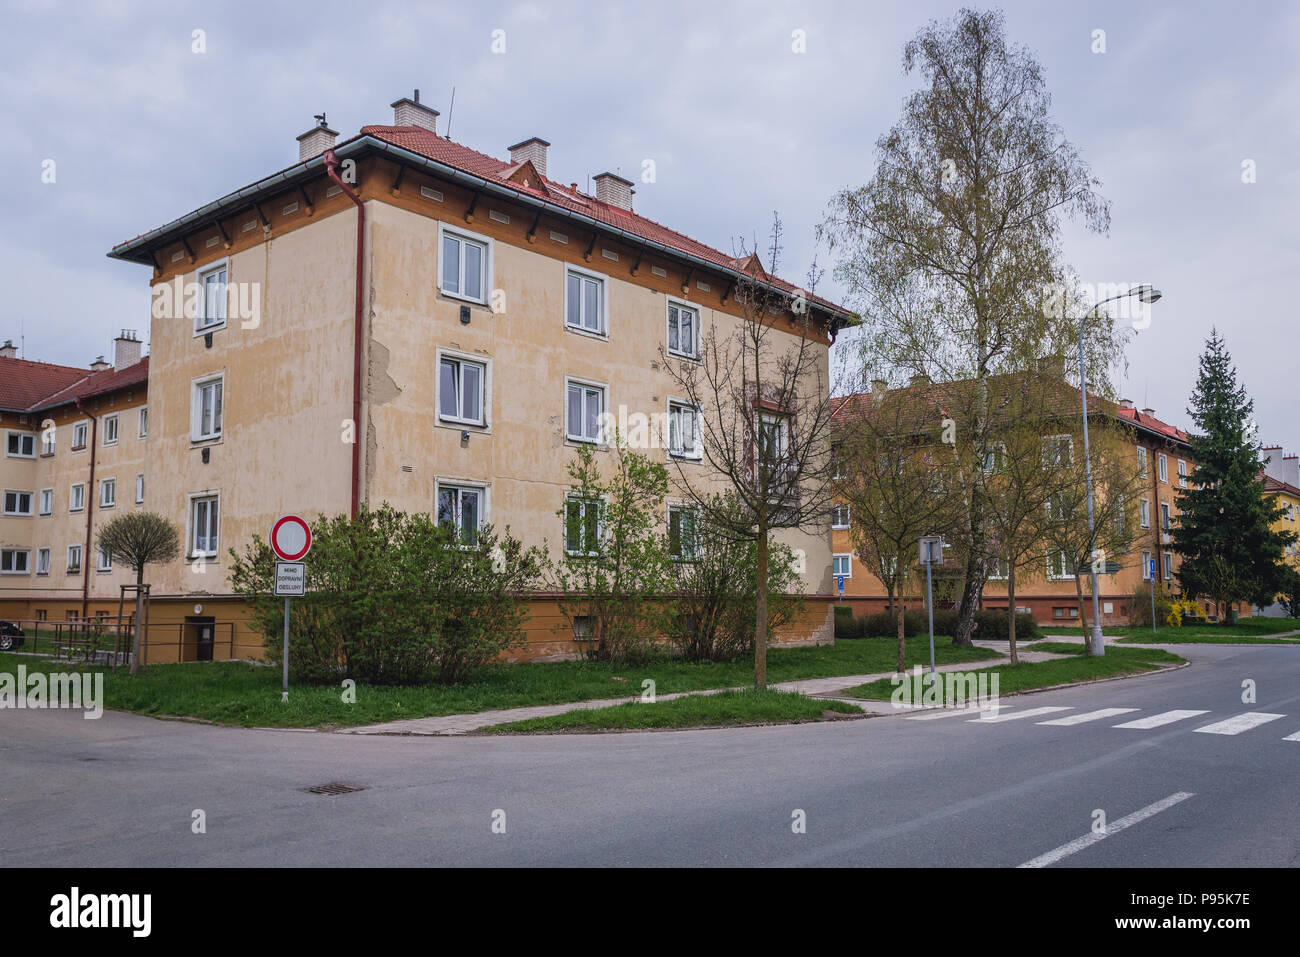 House of flats in Roznov pod Radhostem town in Zlin region of Czech  Republic Stock Photo - Alamy